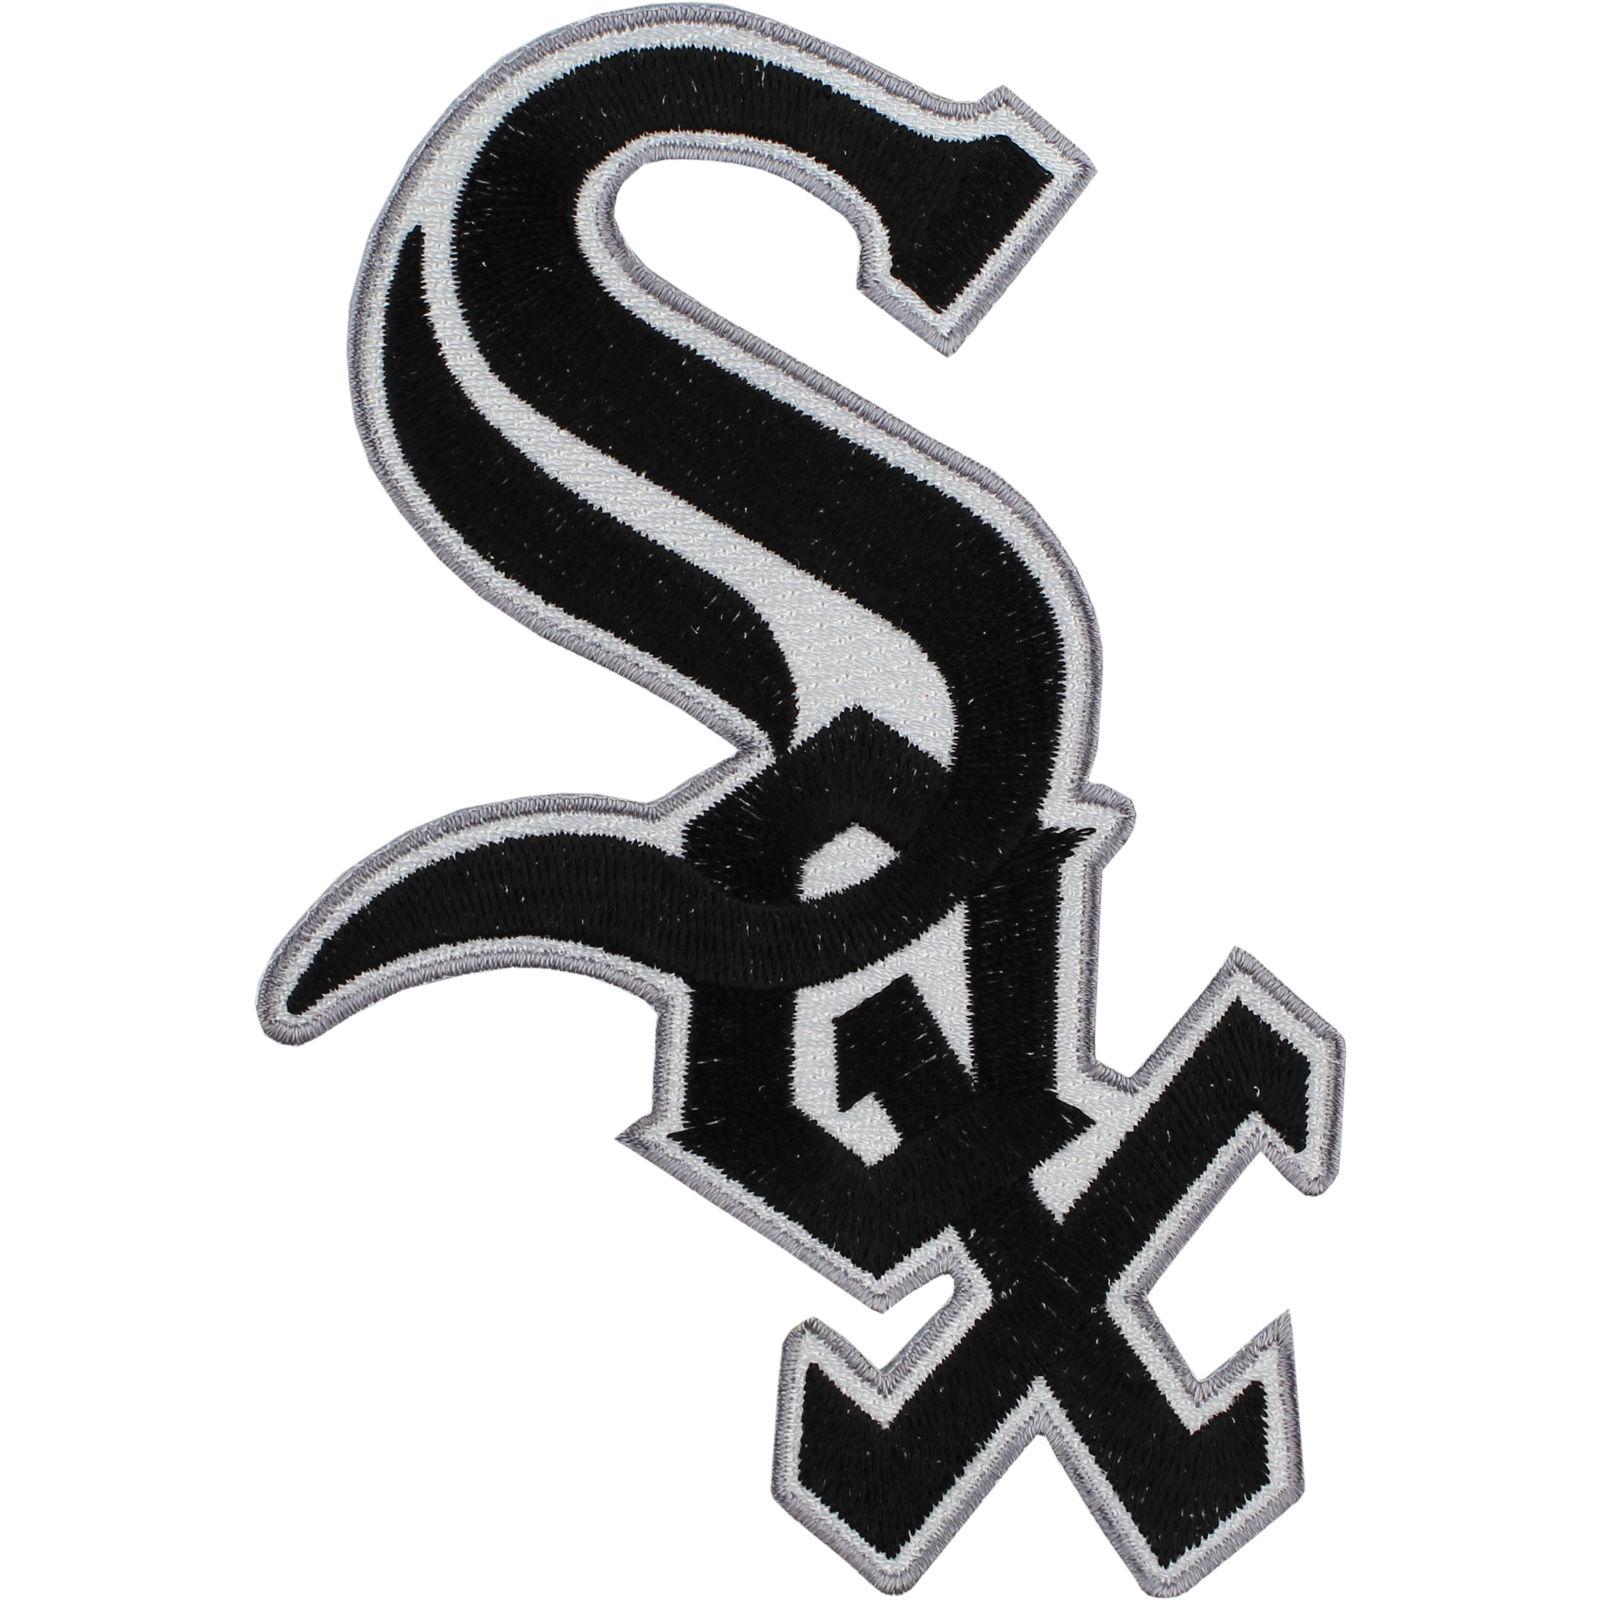 Chicago White Sox (シカゴ・ホワイトソックス)｜アメリカンスポーツ|海外ショッピングサイト「セカイモン」